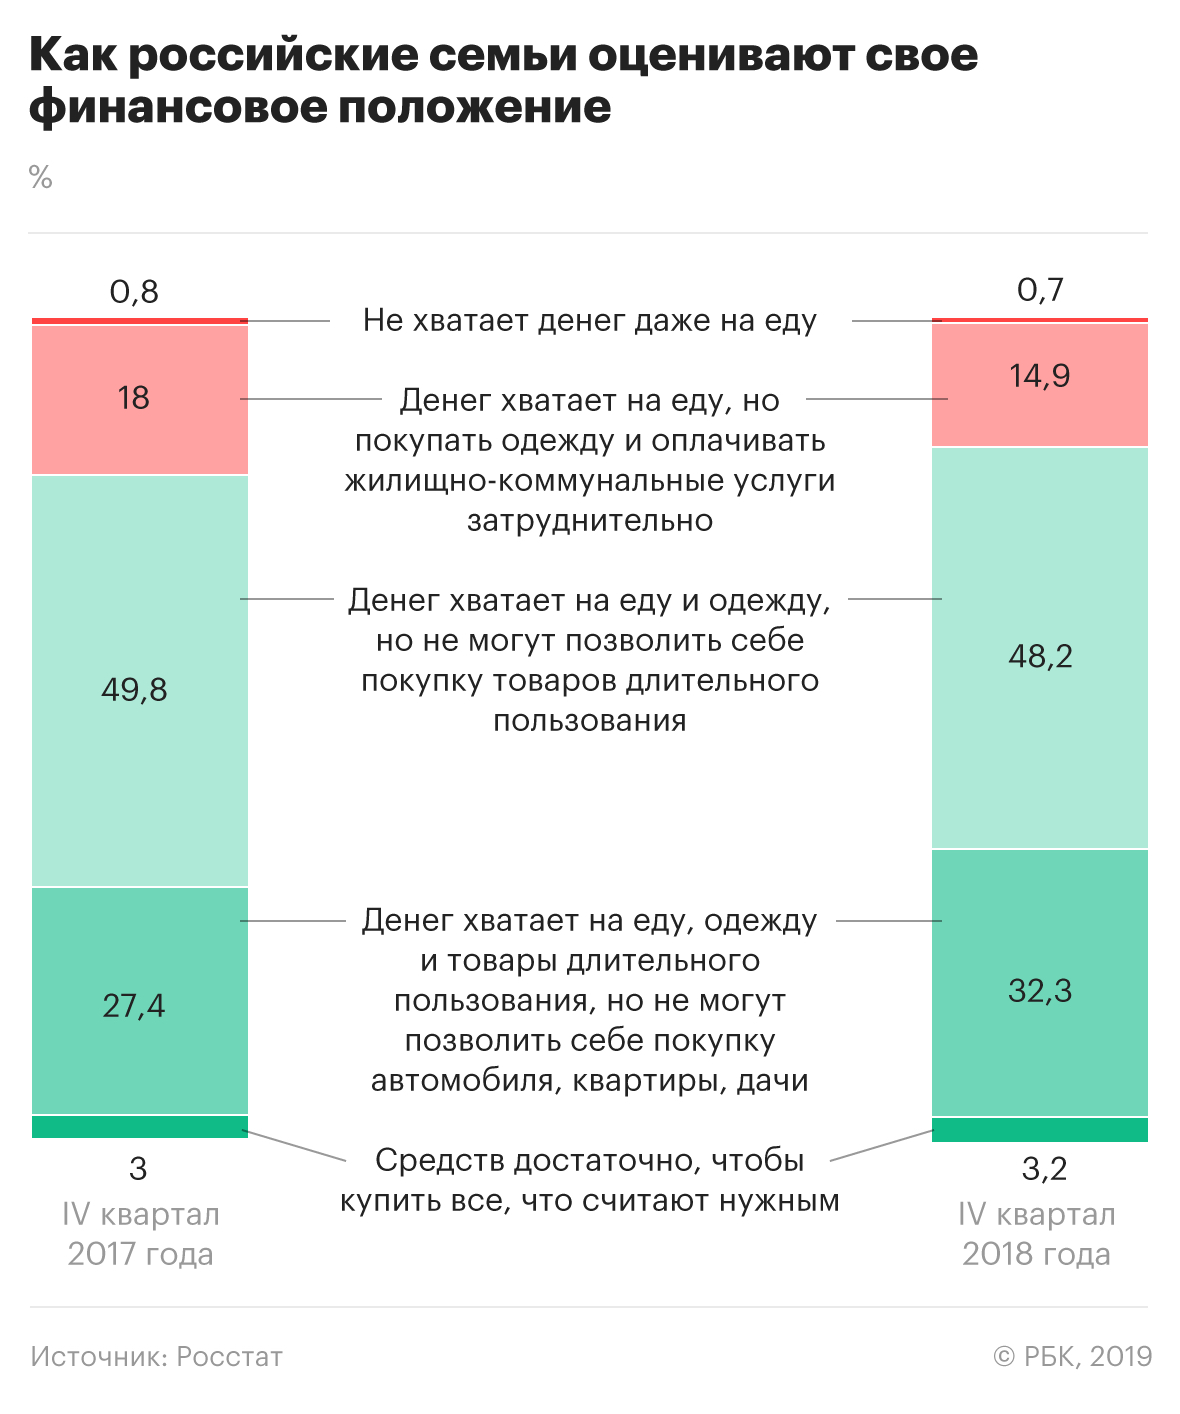 Почти половине российских семей денег хватило только на еду и одежду